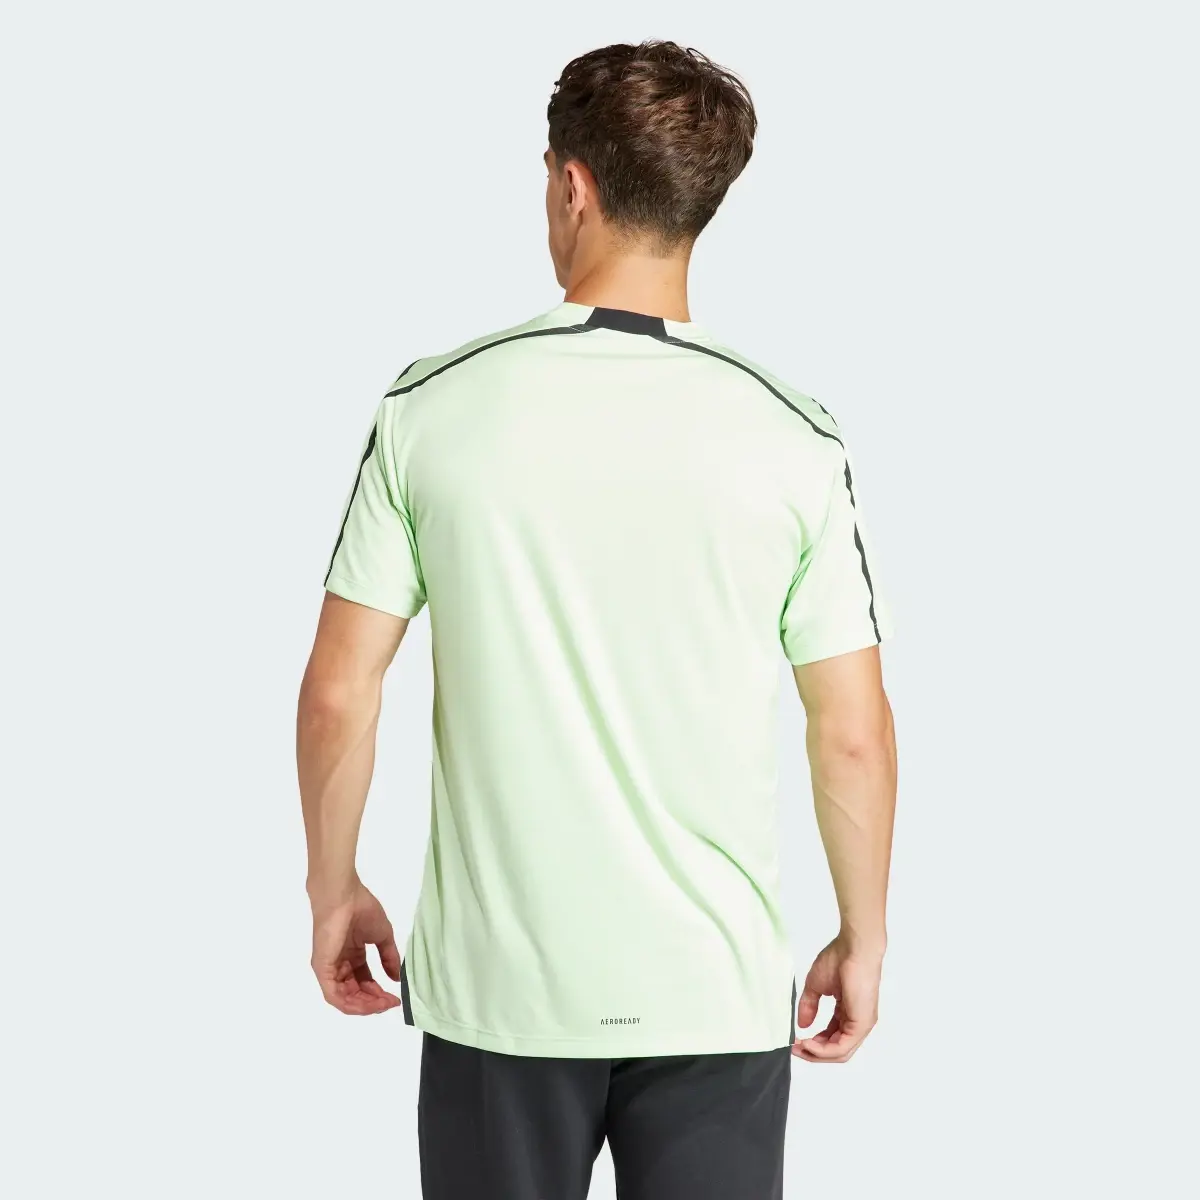 Adidas T-shirt de Treino Adistrong Designed for Training. 3